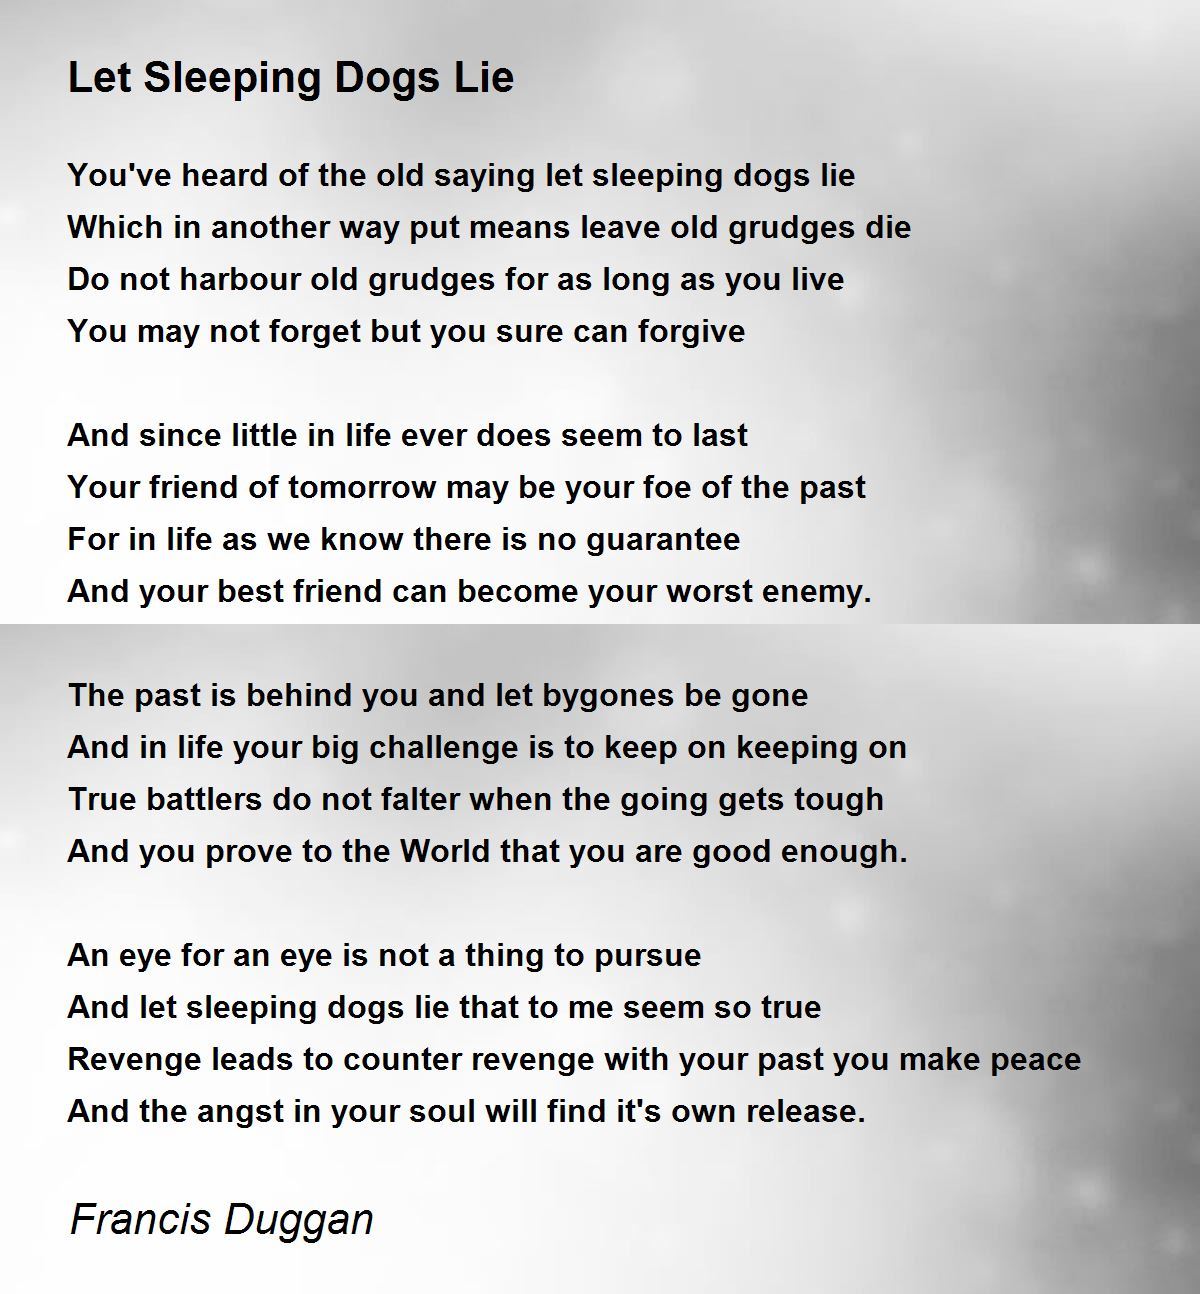 Let Sleeping Dogs Die Lyrics by Mission Uk